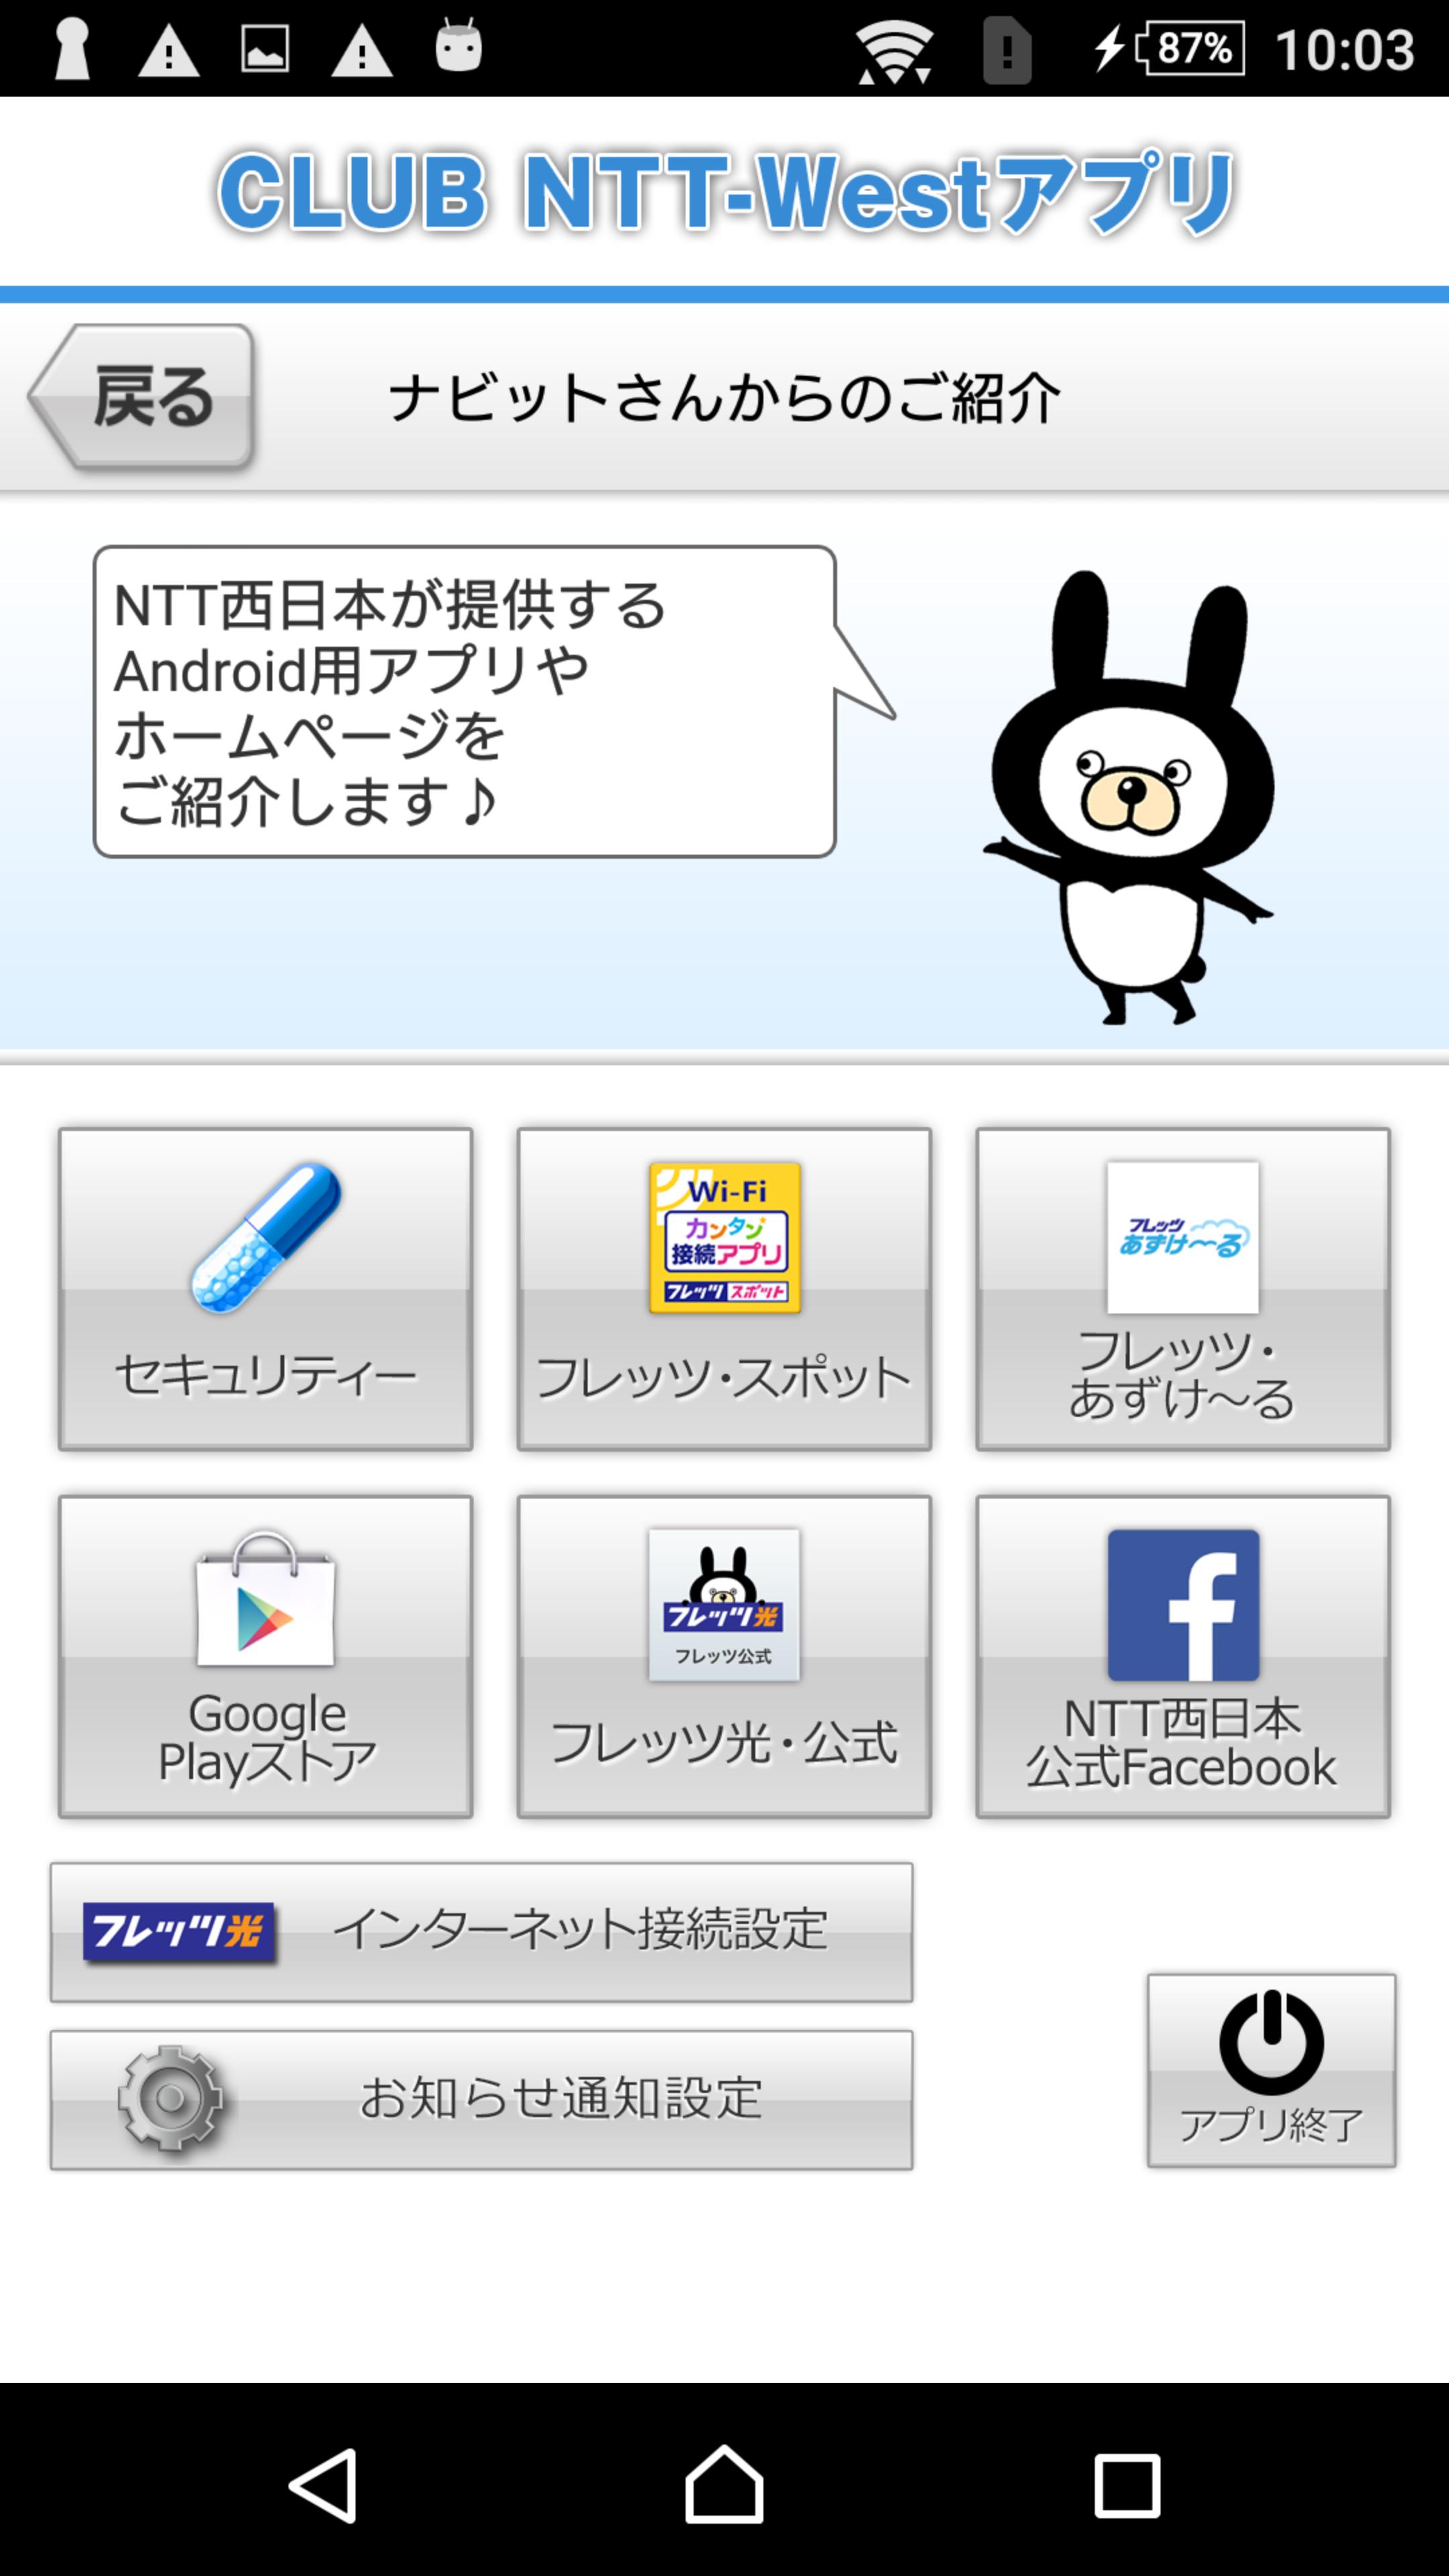 公式 Ntt西日本 Club Ntt Westアプリ For Android Apk Download